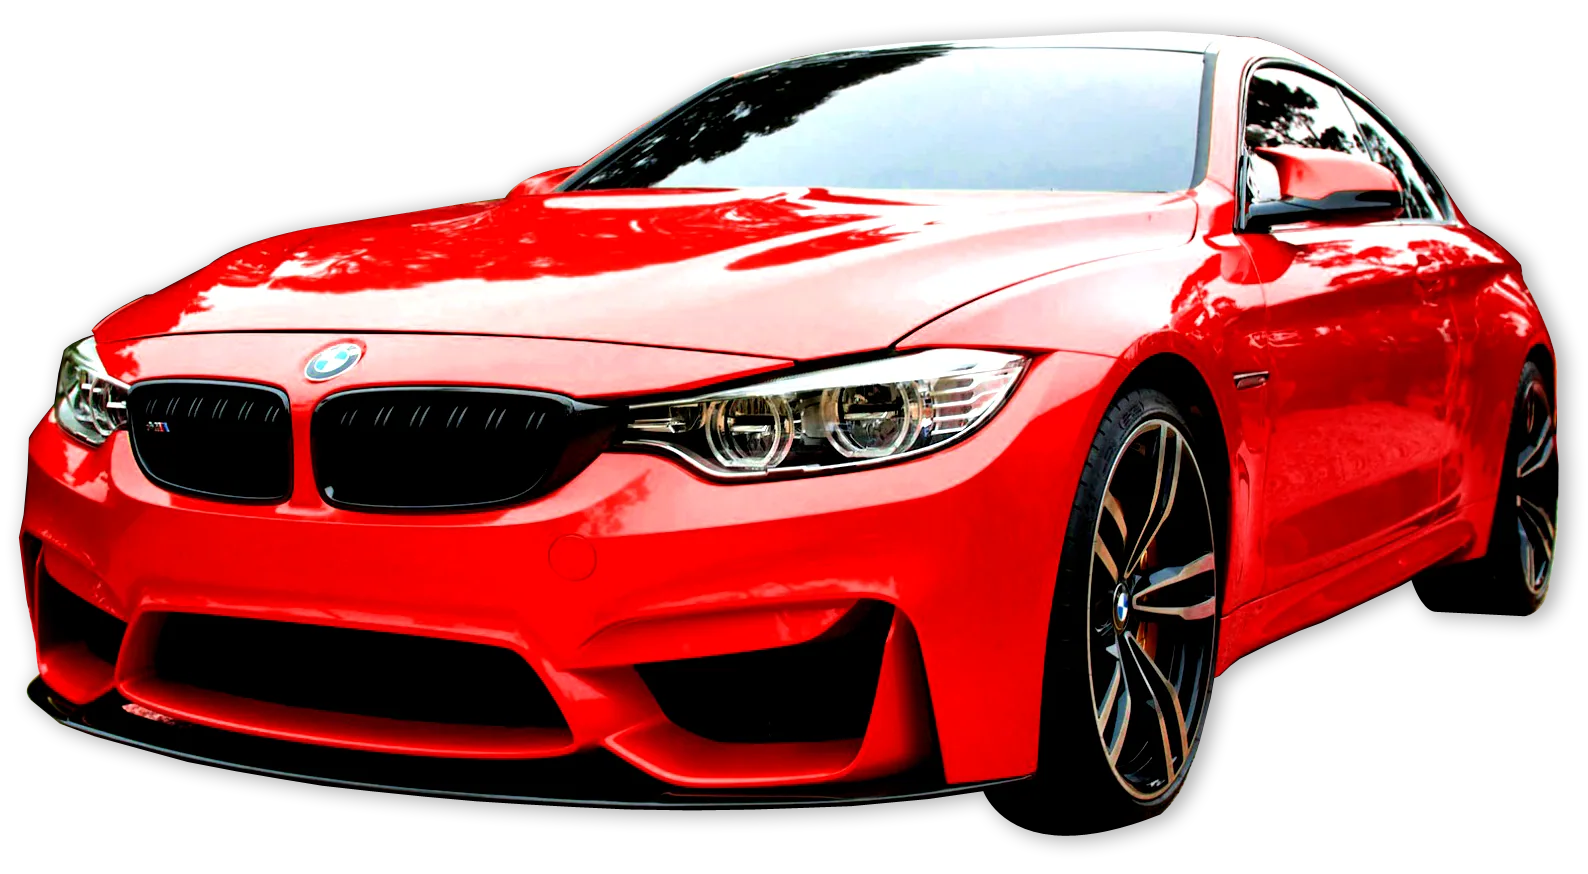 Car-red detail